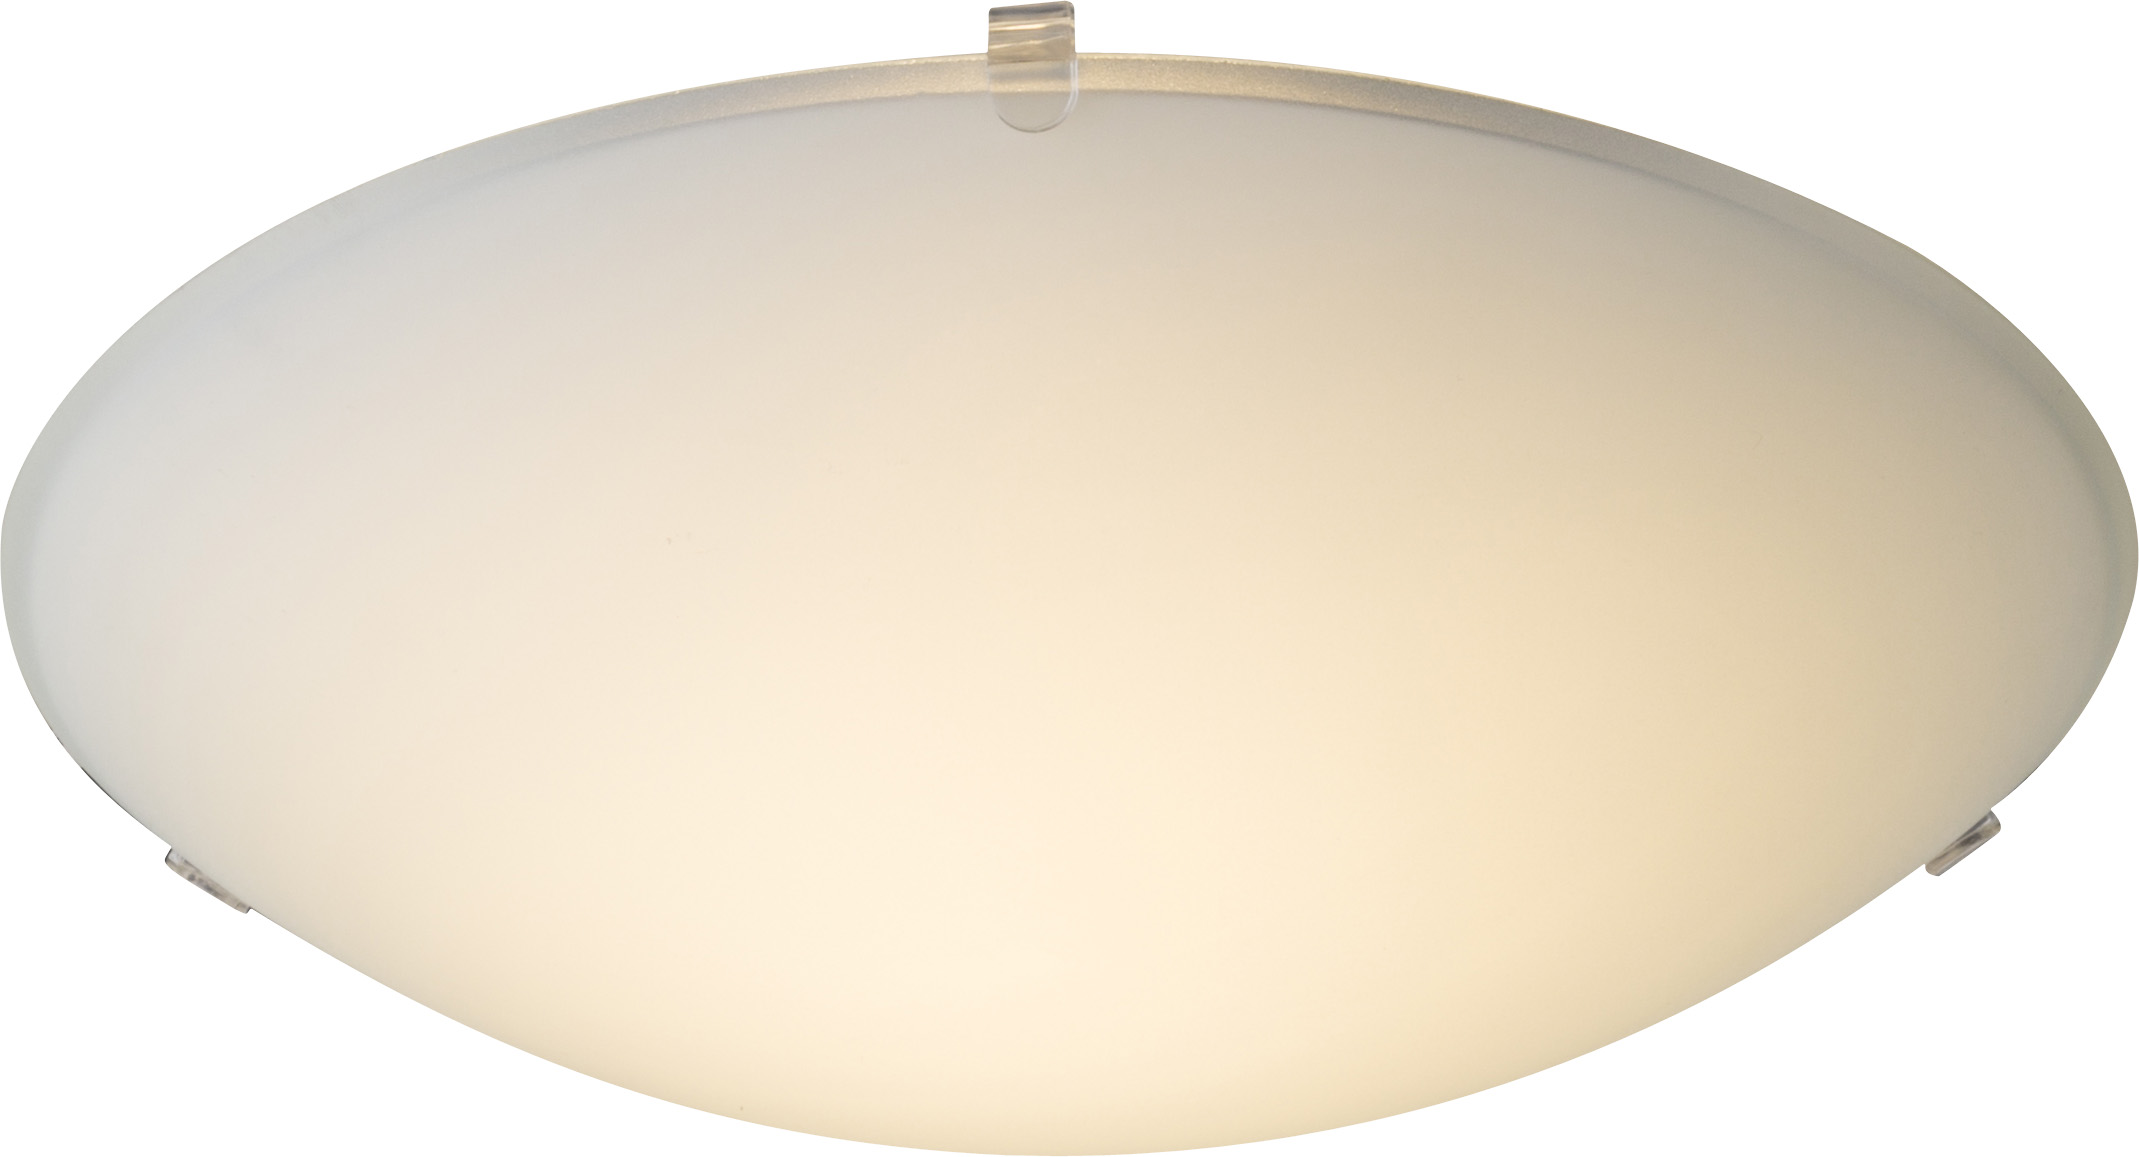 Светильник настенно-потолочный Globo 4040DLED, белый, LED, 1x8W